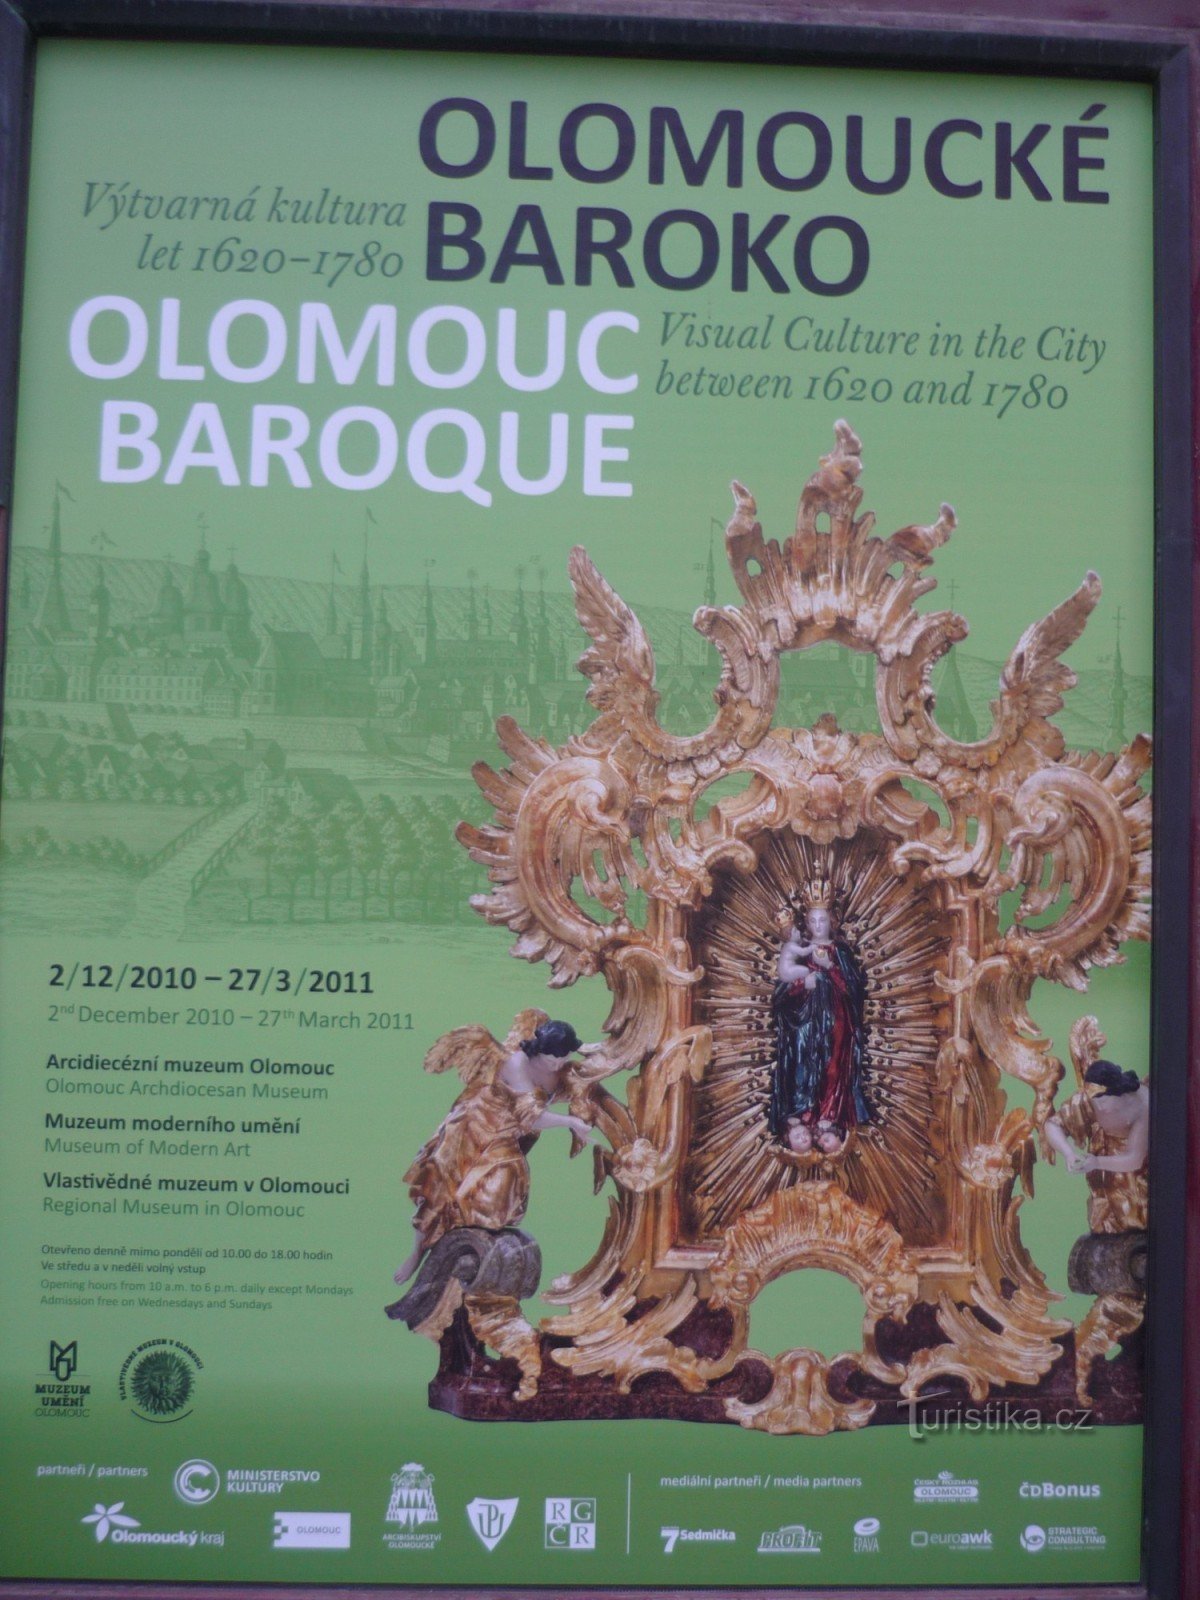 Barroco de Olomouc - cartel fotográfico